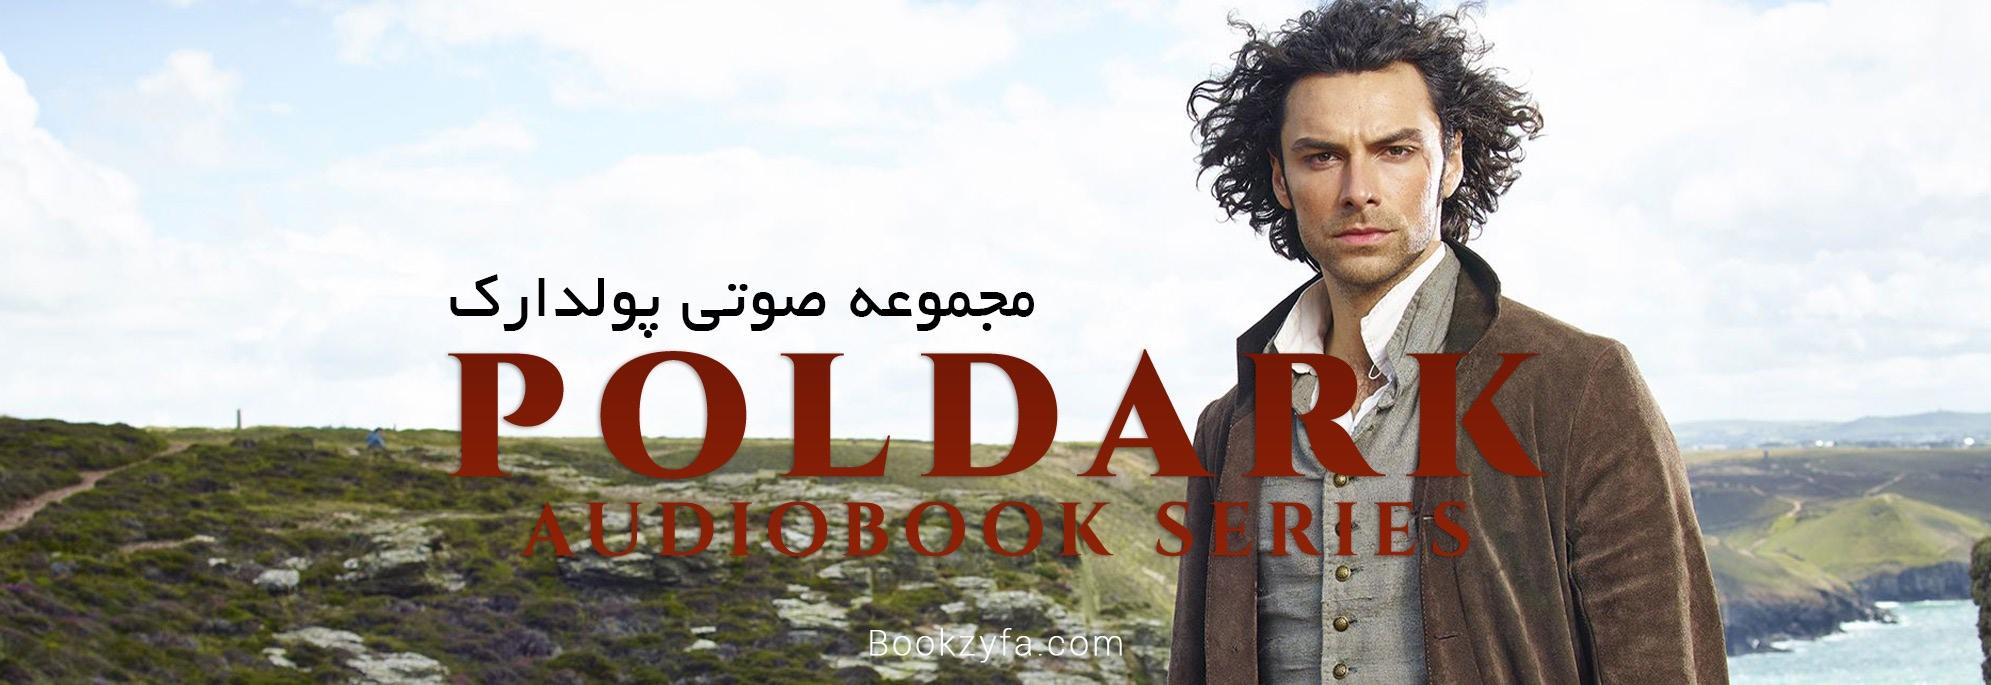 Poldark Audiobook Series